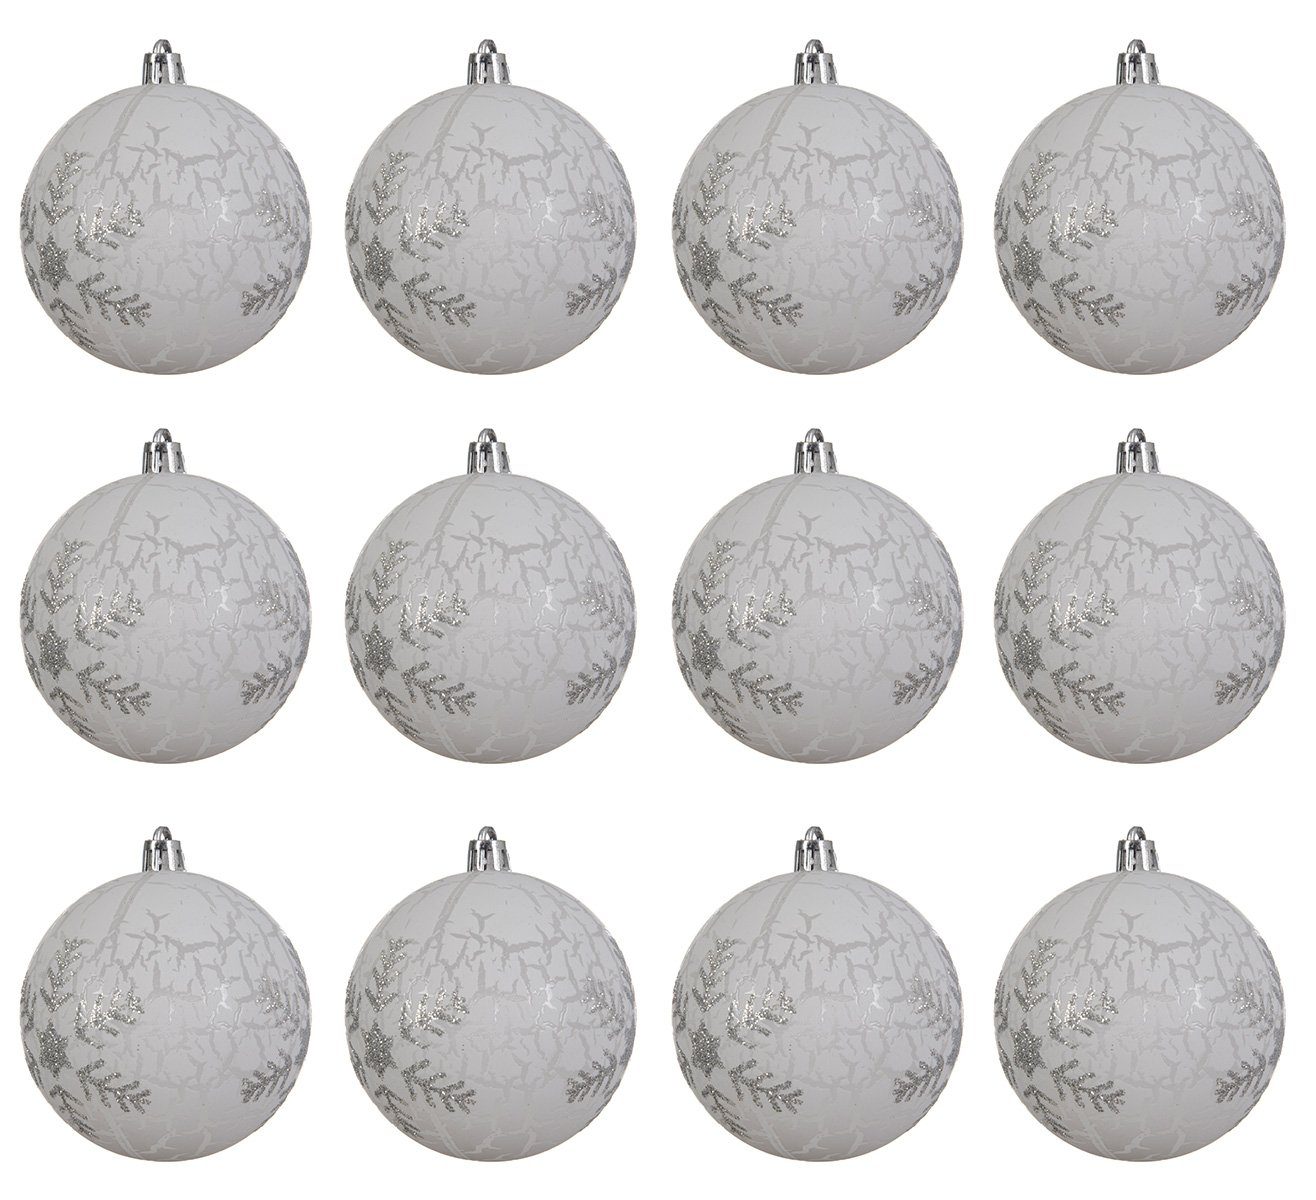 Decoris season decorations Weihnachtsbaumkugel, Weihnachtskugeln Kunststoff 8cm Schneeflocken Motiv 12er Set - Weiß